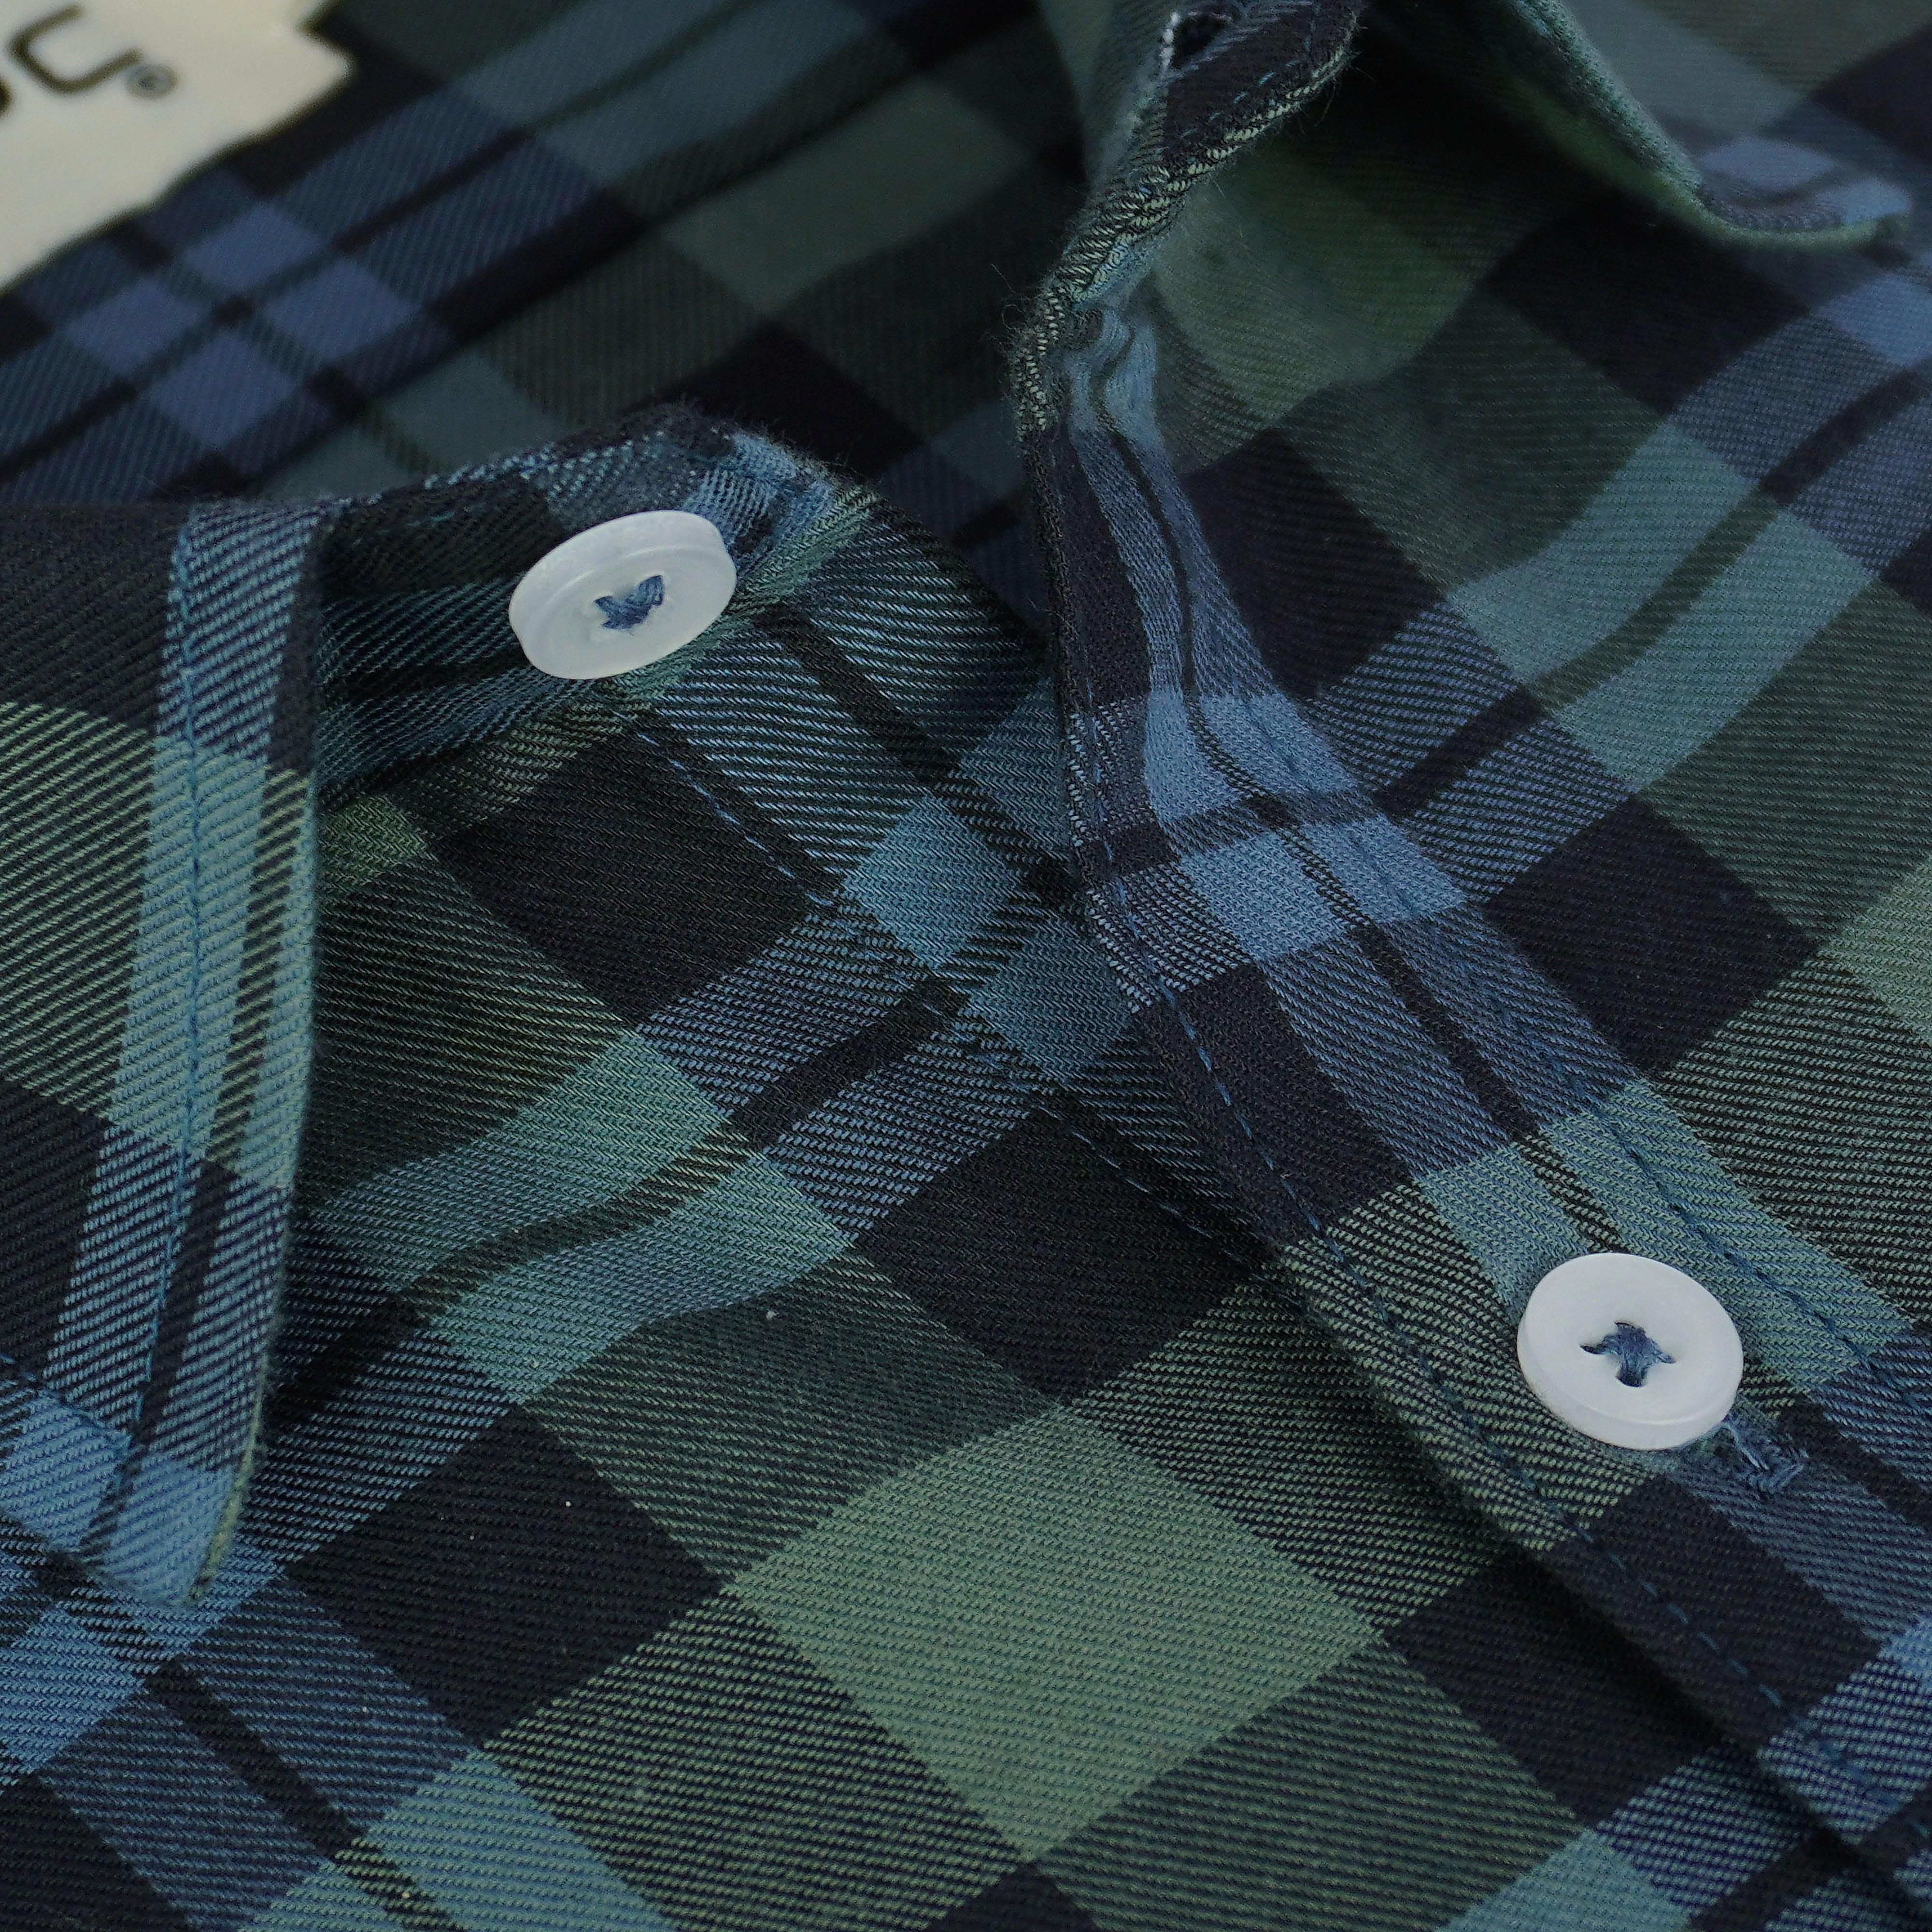 Men's 100% Cotton Tartan Checkered Half Sleeves Shirt (Multicolor)